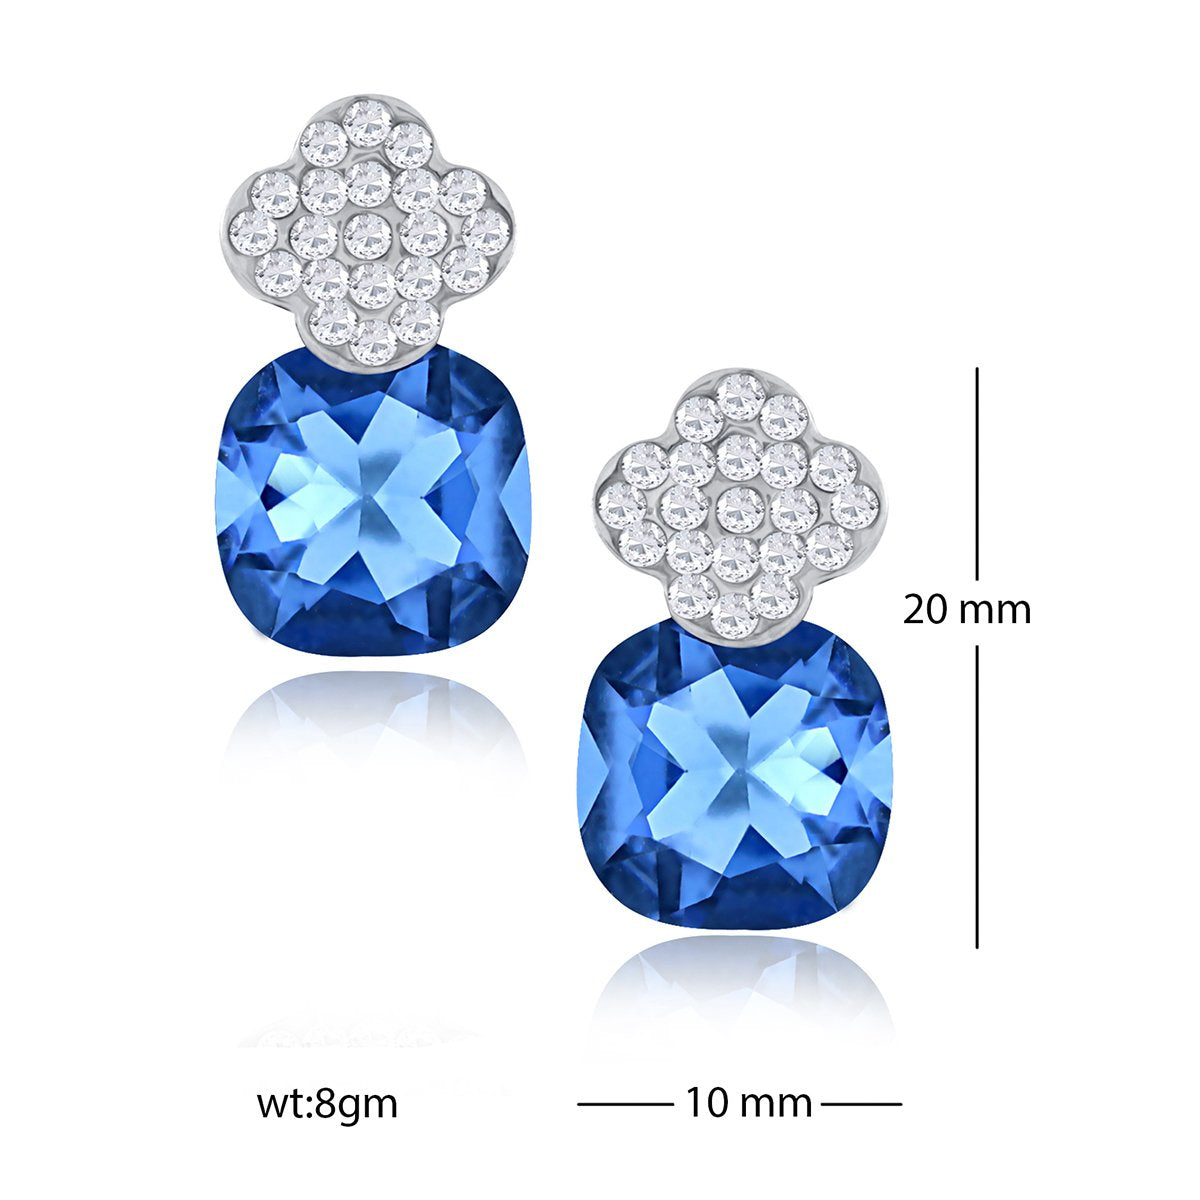 Quatrefoil Aaa Crystal American Diamond Blue Rhodium Stud Earring